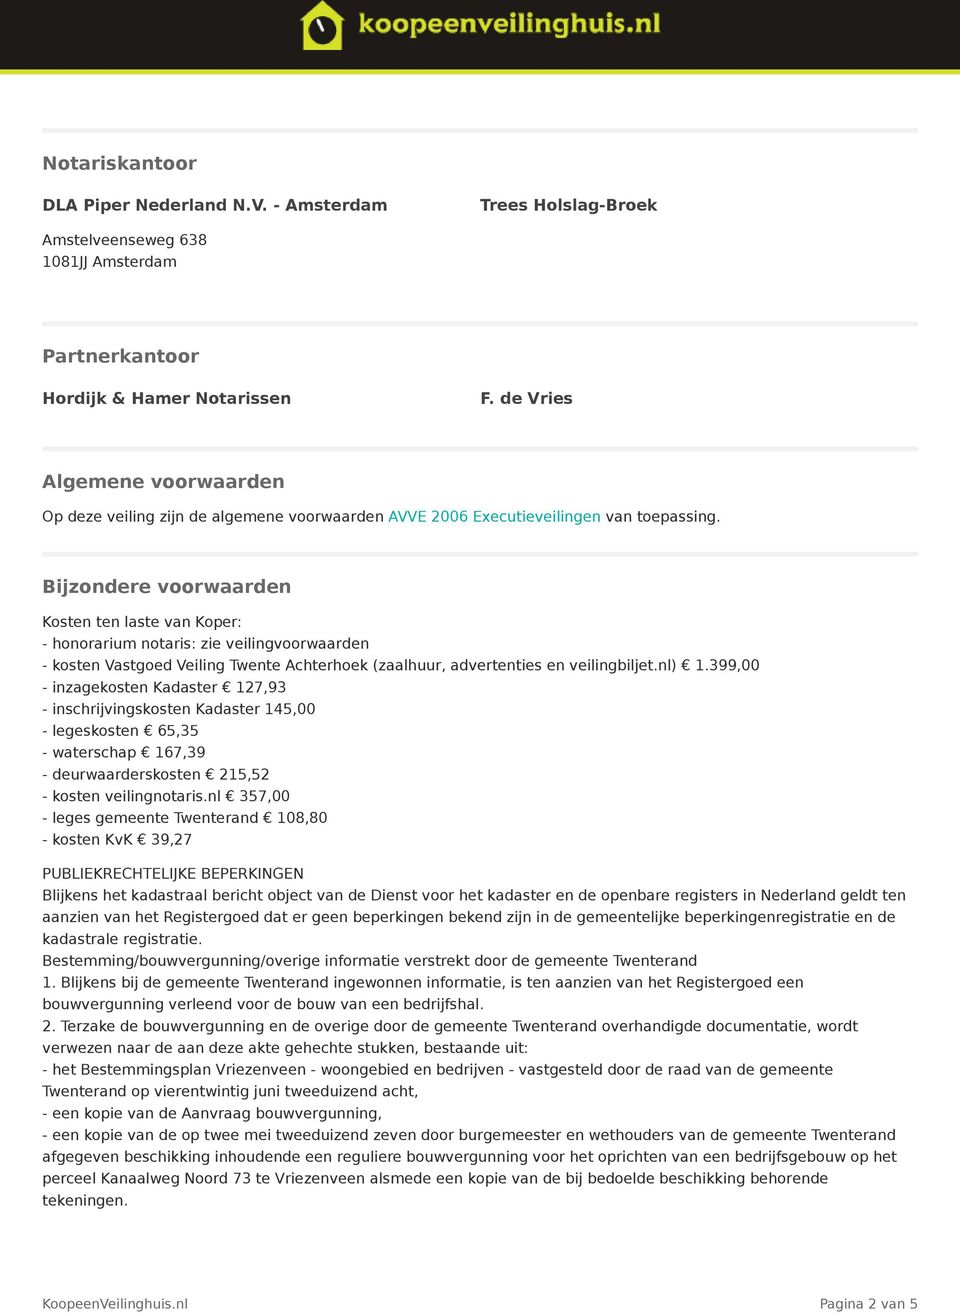 Bijzondere voorwaarden Kosten ten laste van Koper: - honorarium notaris: zie veilingvoorwaarden - kosten Vastgoed Veiling Twente Achterhoek (zaalhuur, advertenties en veilingbiljet.nl) 1.